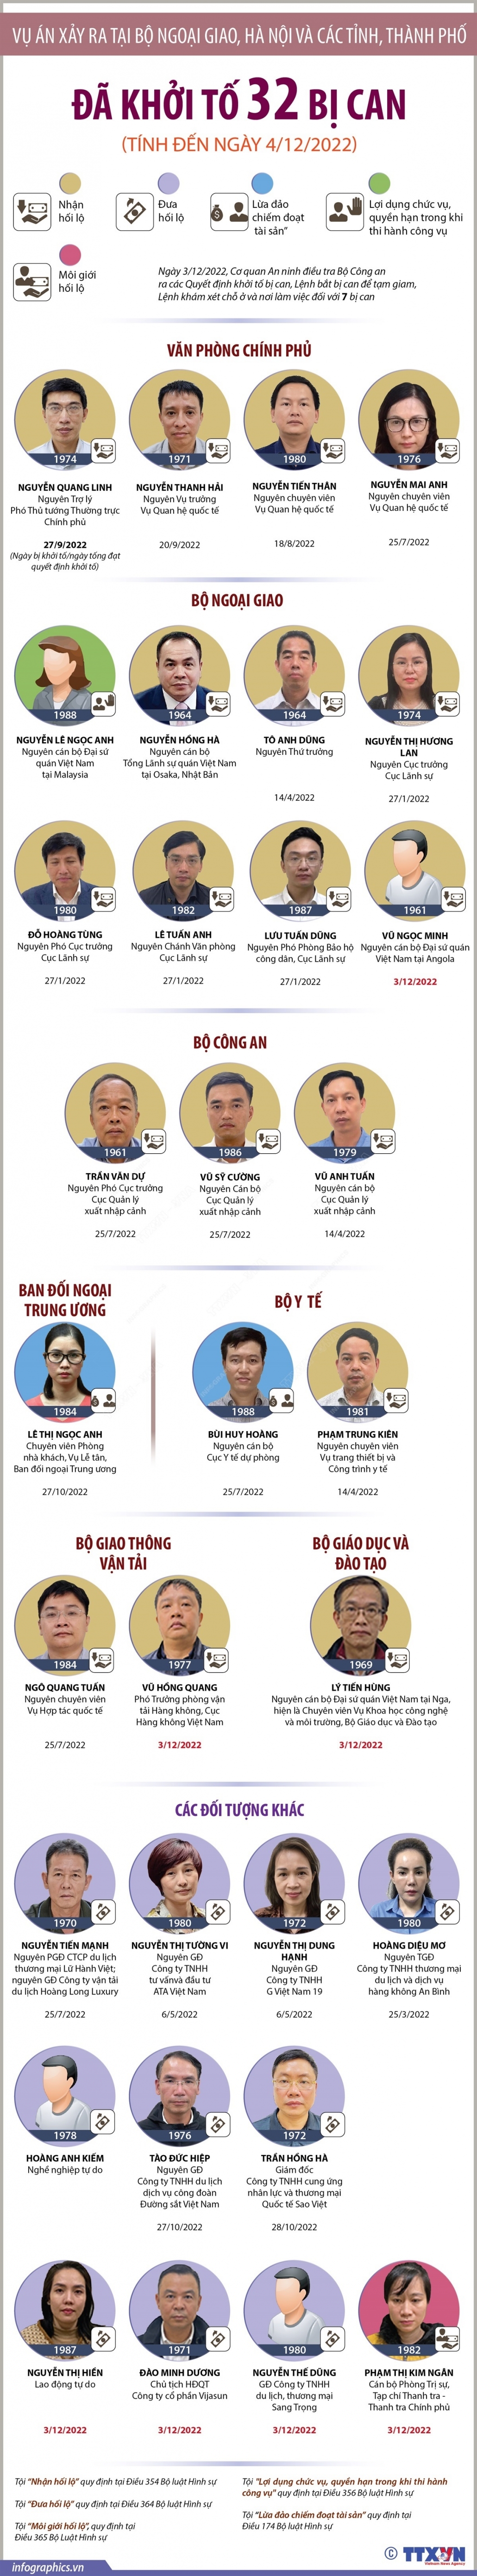 Vụ án xảy ra tại Bộ Ngoại giao, Hà Nội và các tỉnh, thành phố: Đã khởi tố 32 bị can